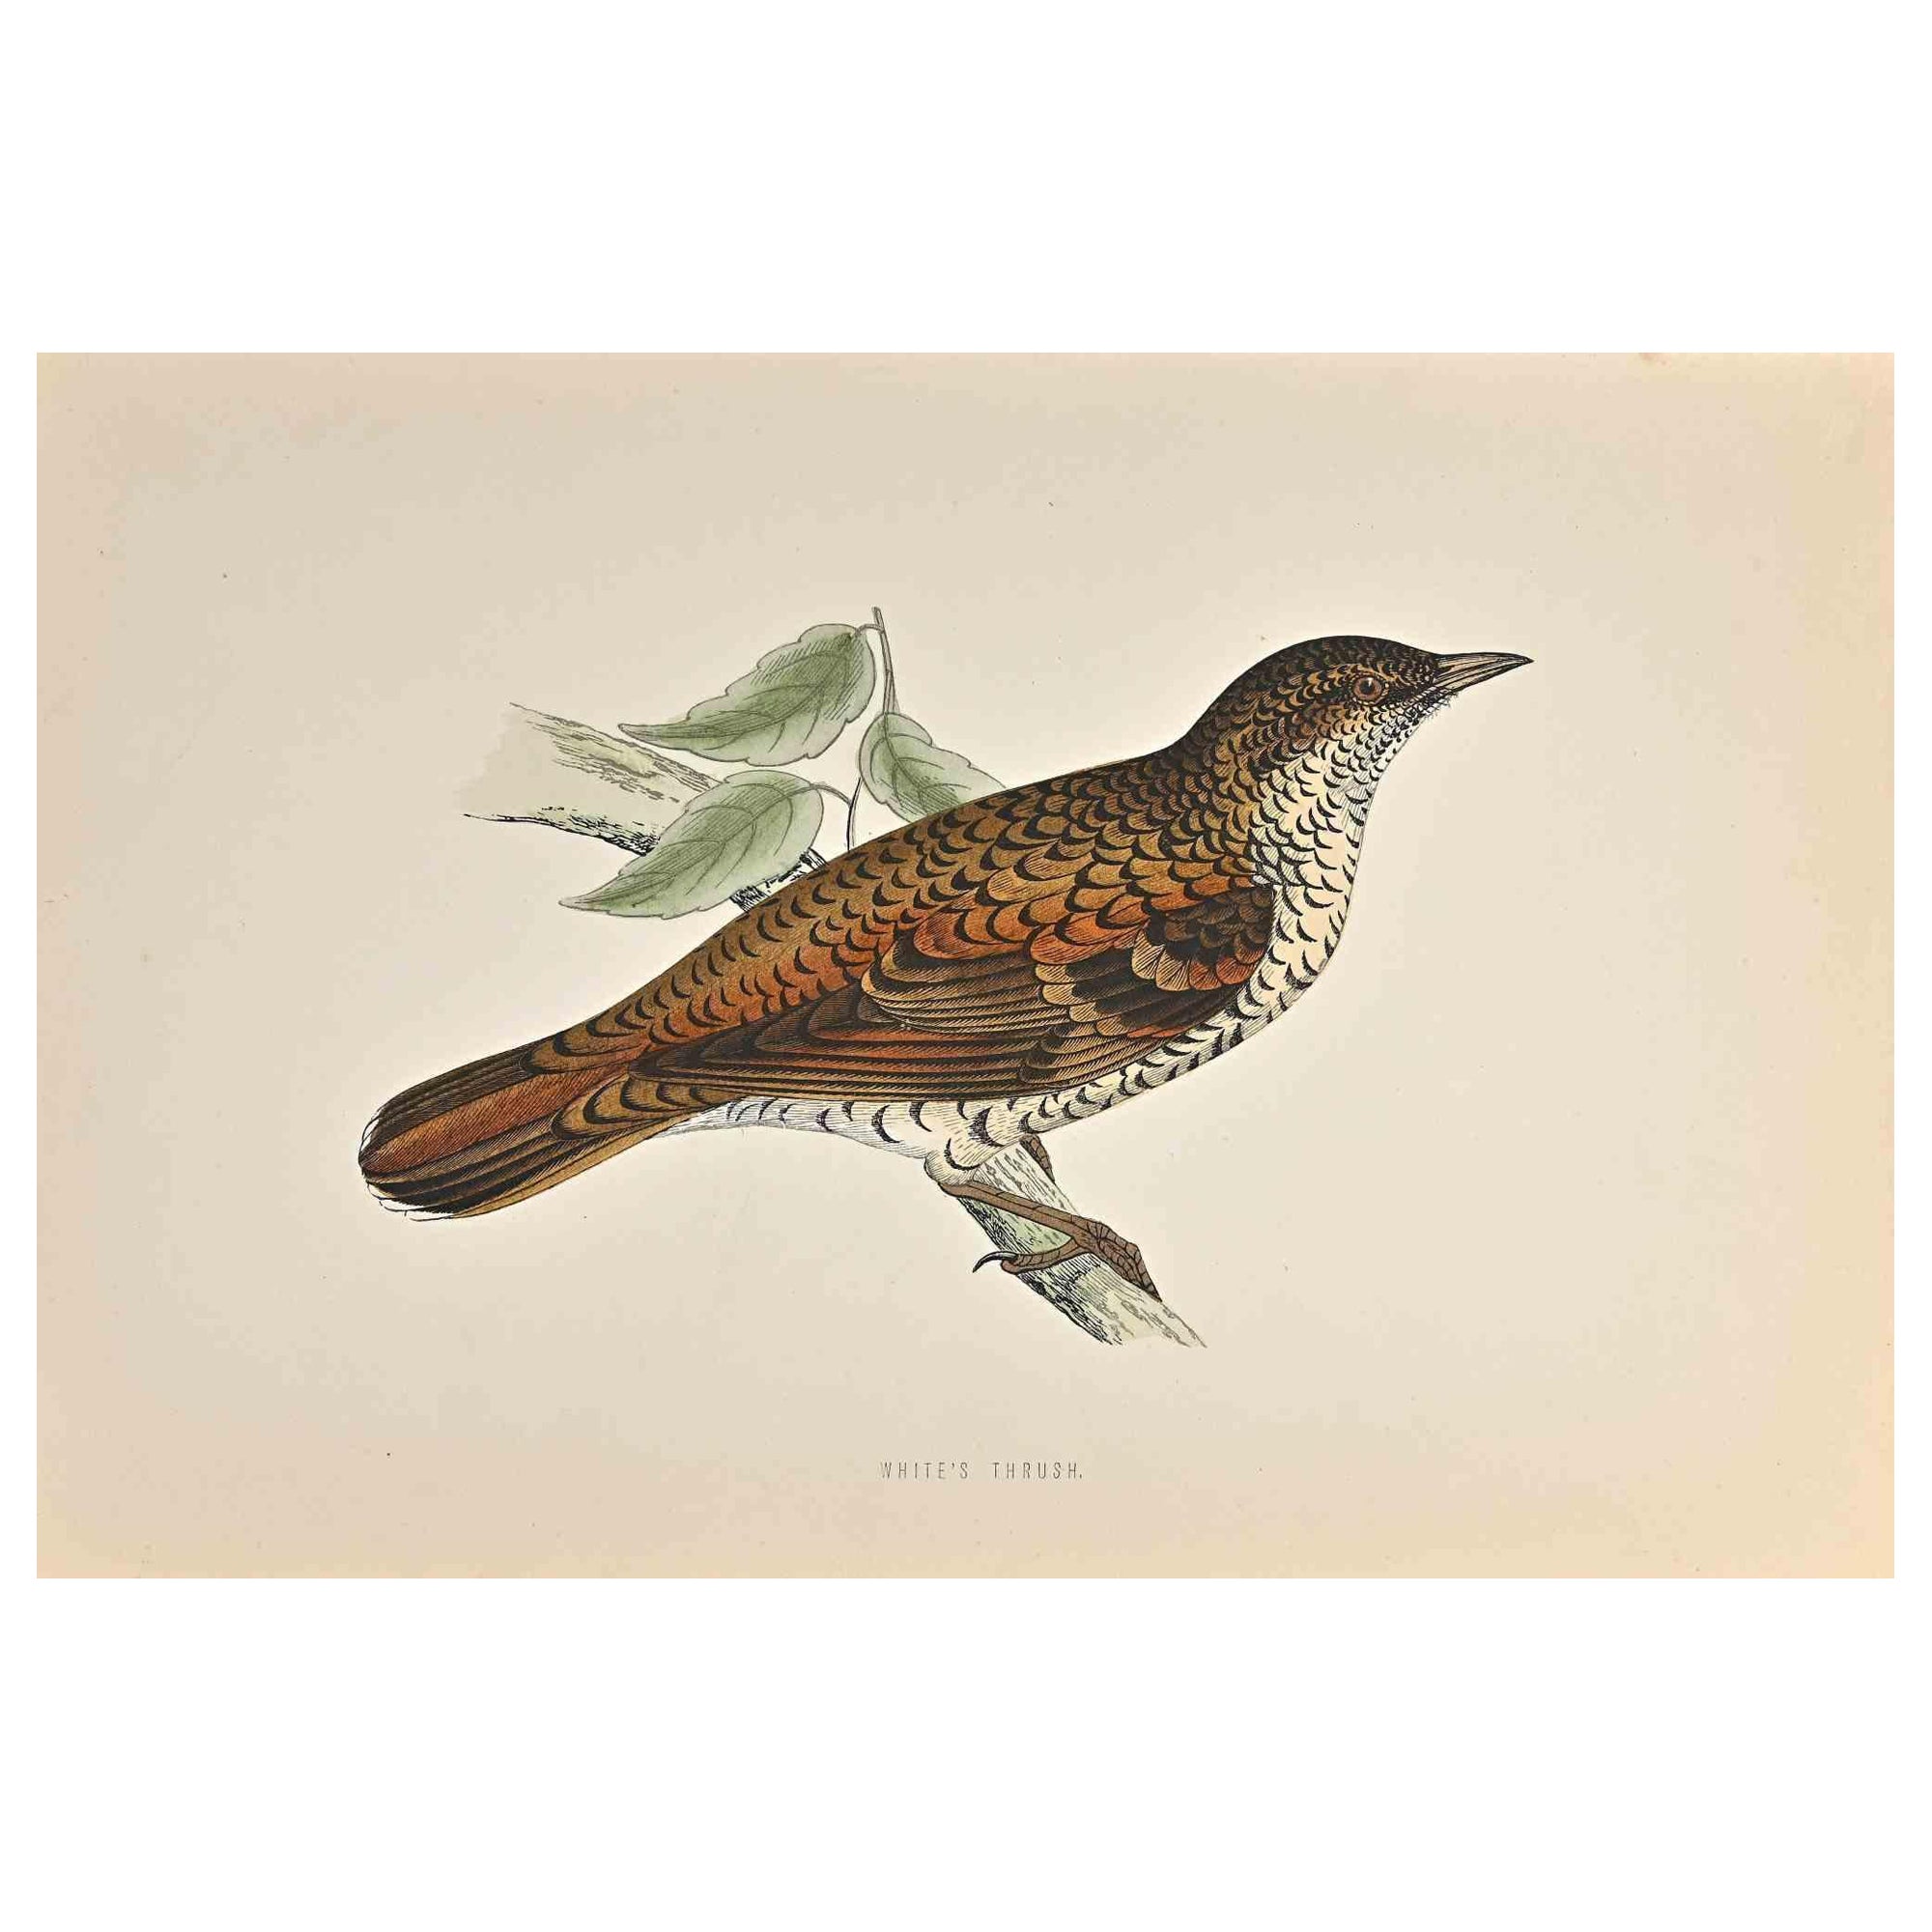 La Grive blanche est une œuvre d'art moderne réalisée en 1870 par l'artiste britannique Alexander Francis Lydon (1836-1917) . 

Gravure sur bois, colorée à la main, publiée par London, Bell & Sons, 1870.  Nom de l'oiseau imprimé dans la plaque.